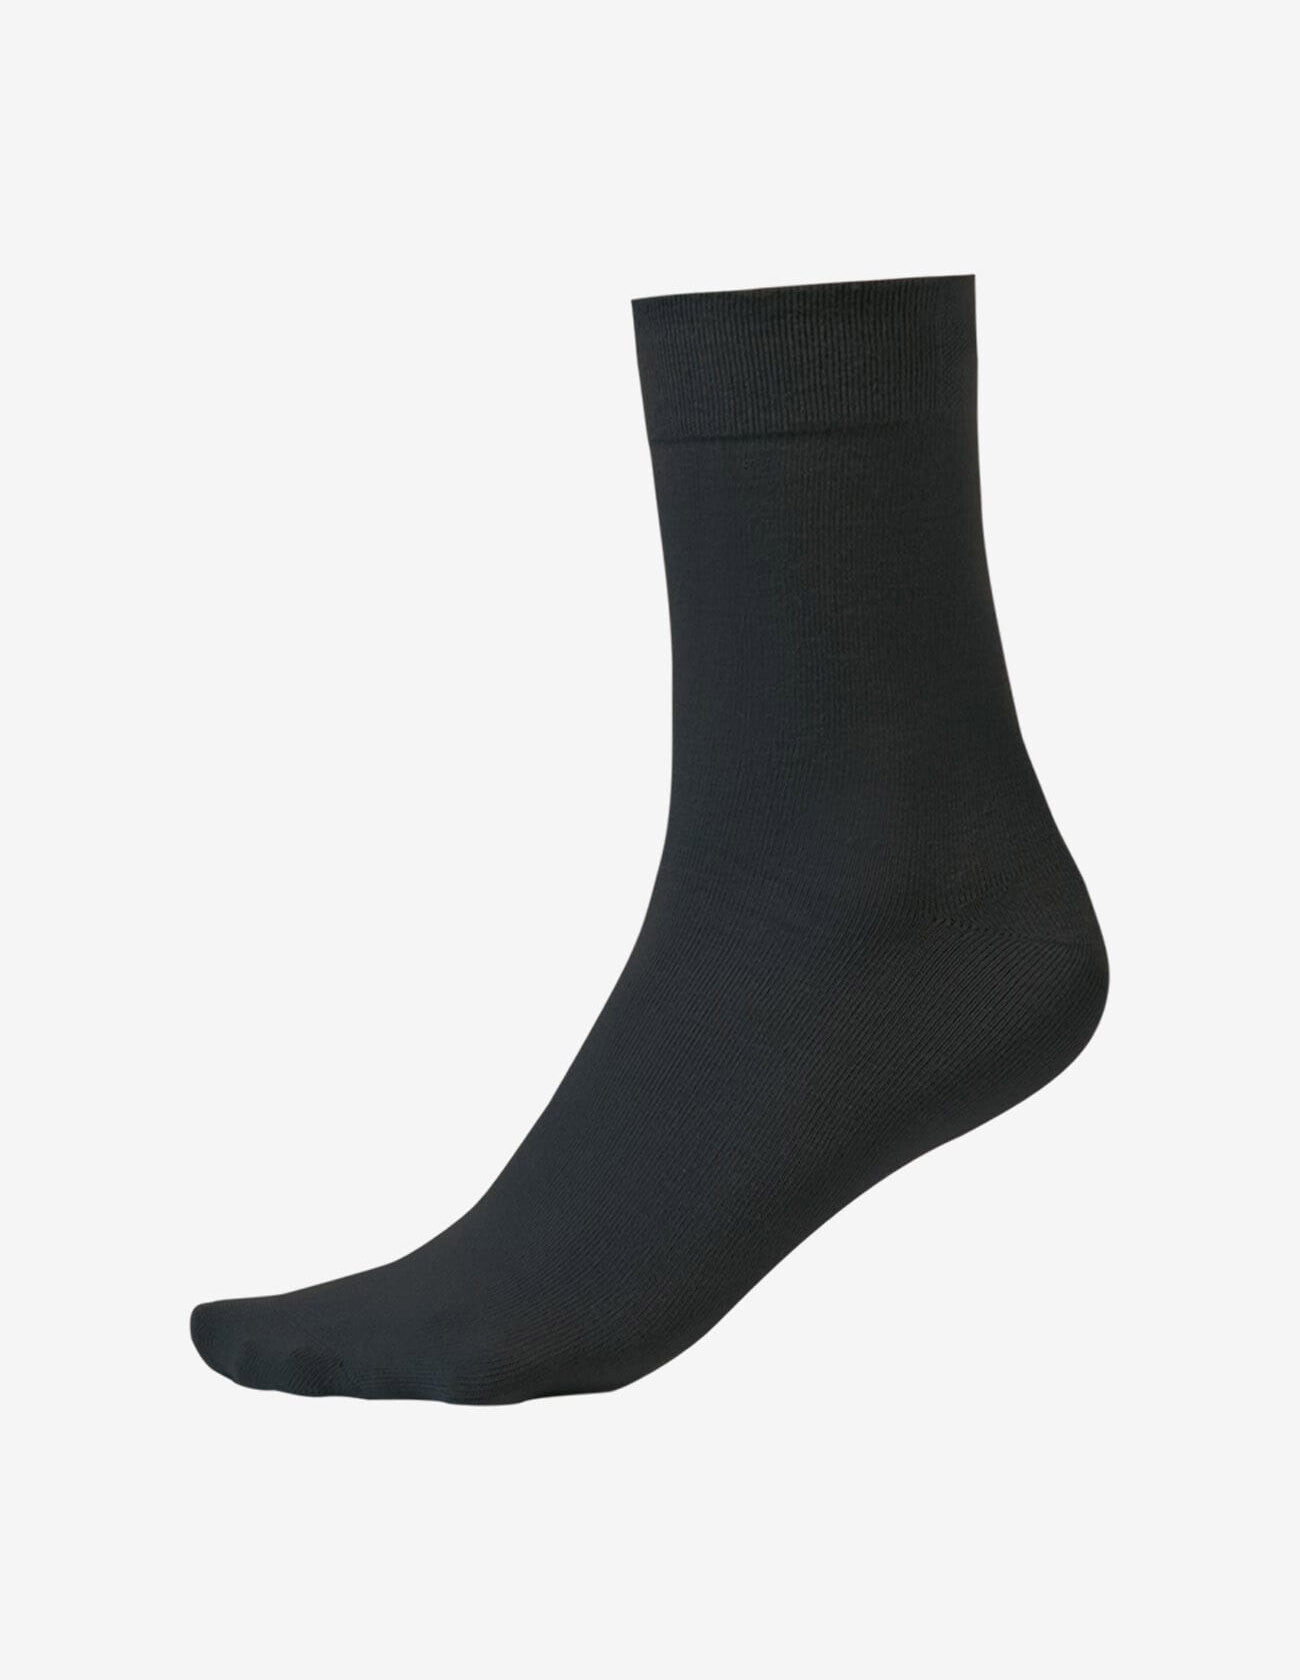 Pánské nestahovací ponožky BAMBUS 165 černé - Steven 41/43